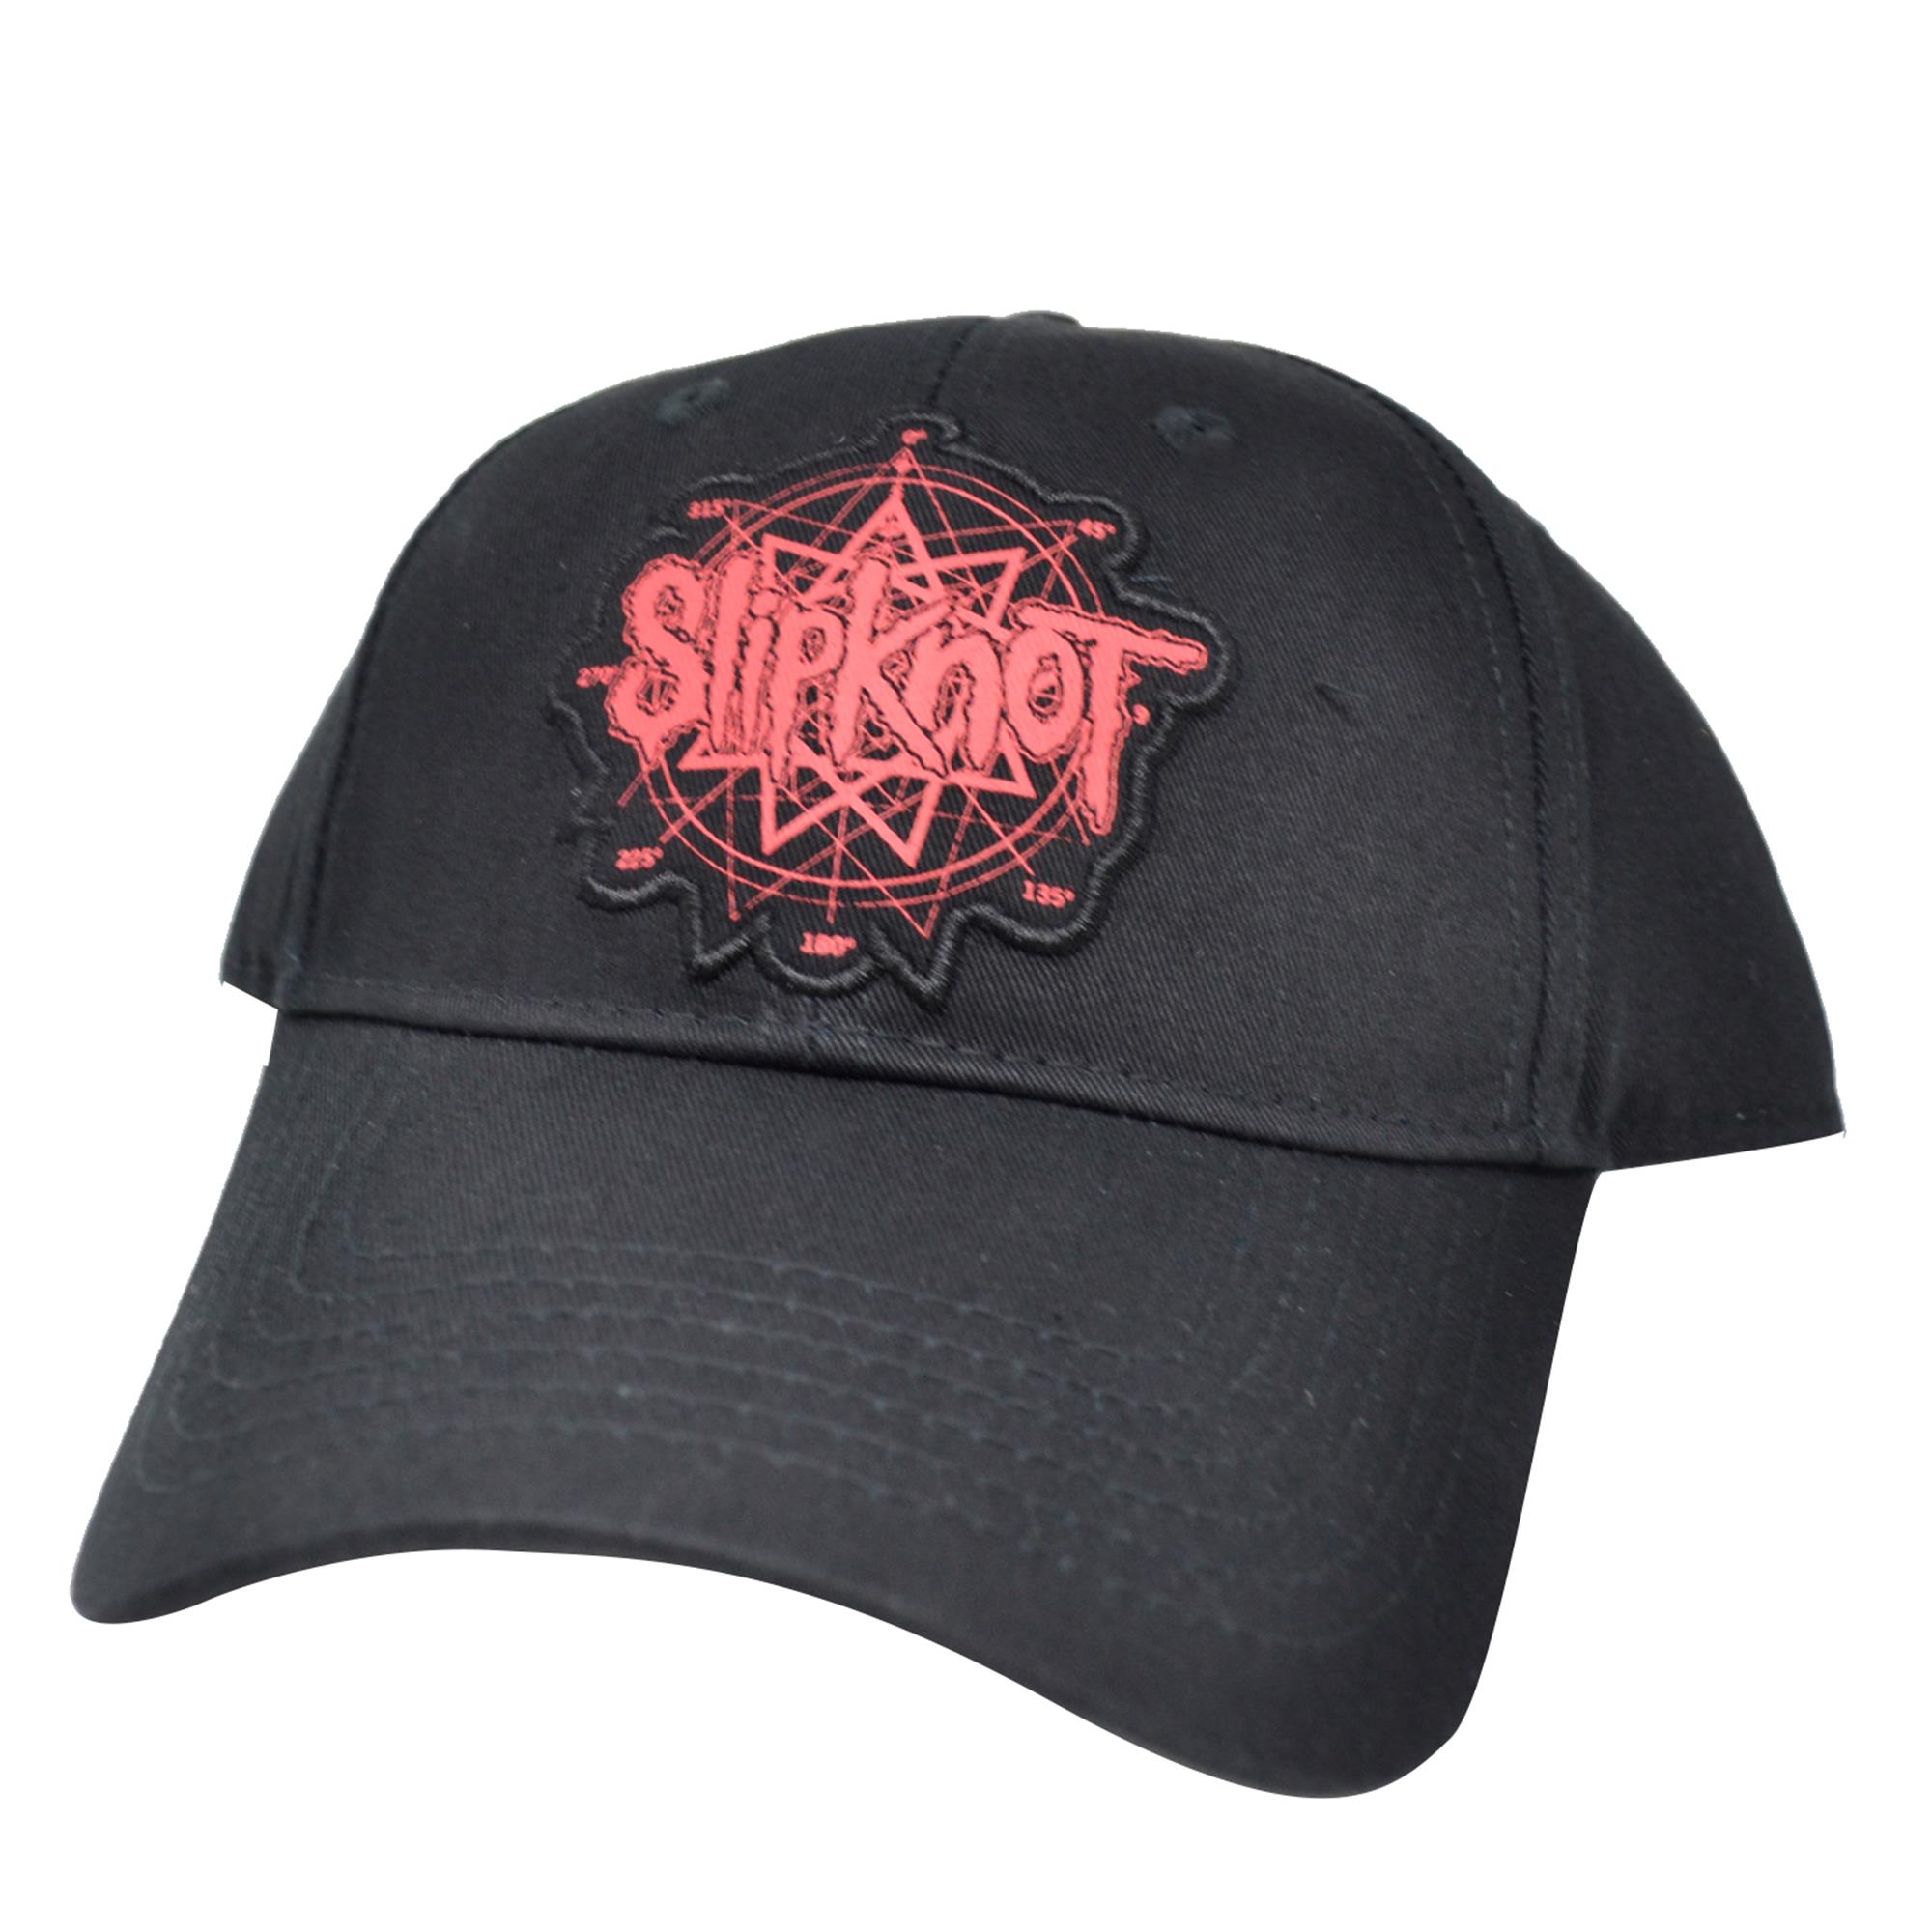 Slipknot Logo Hat